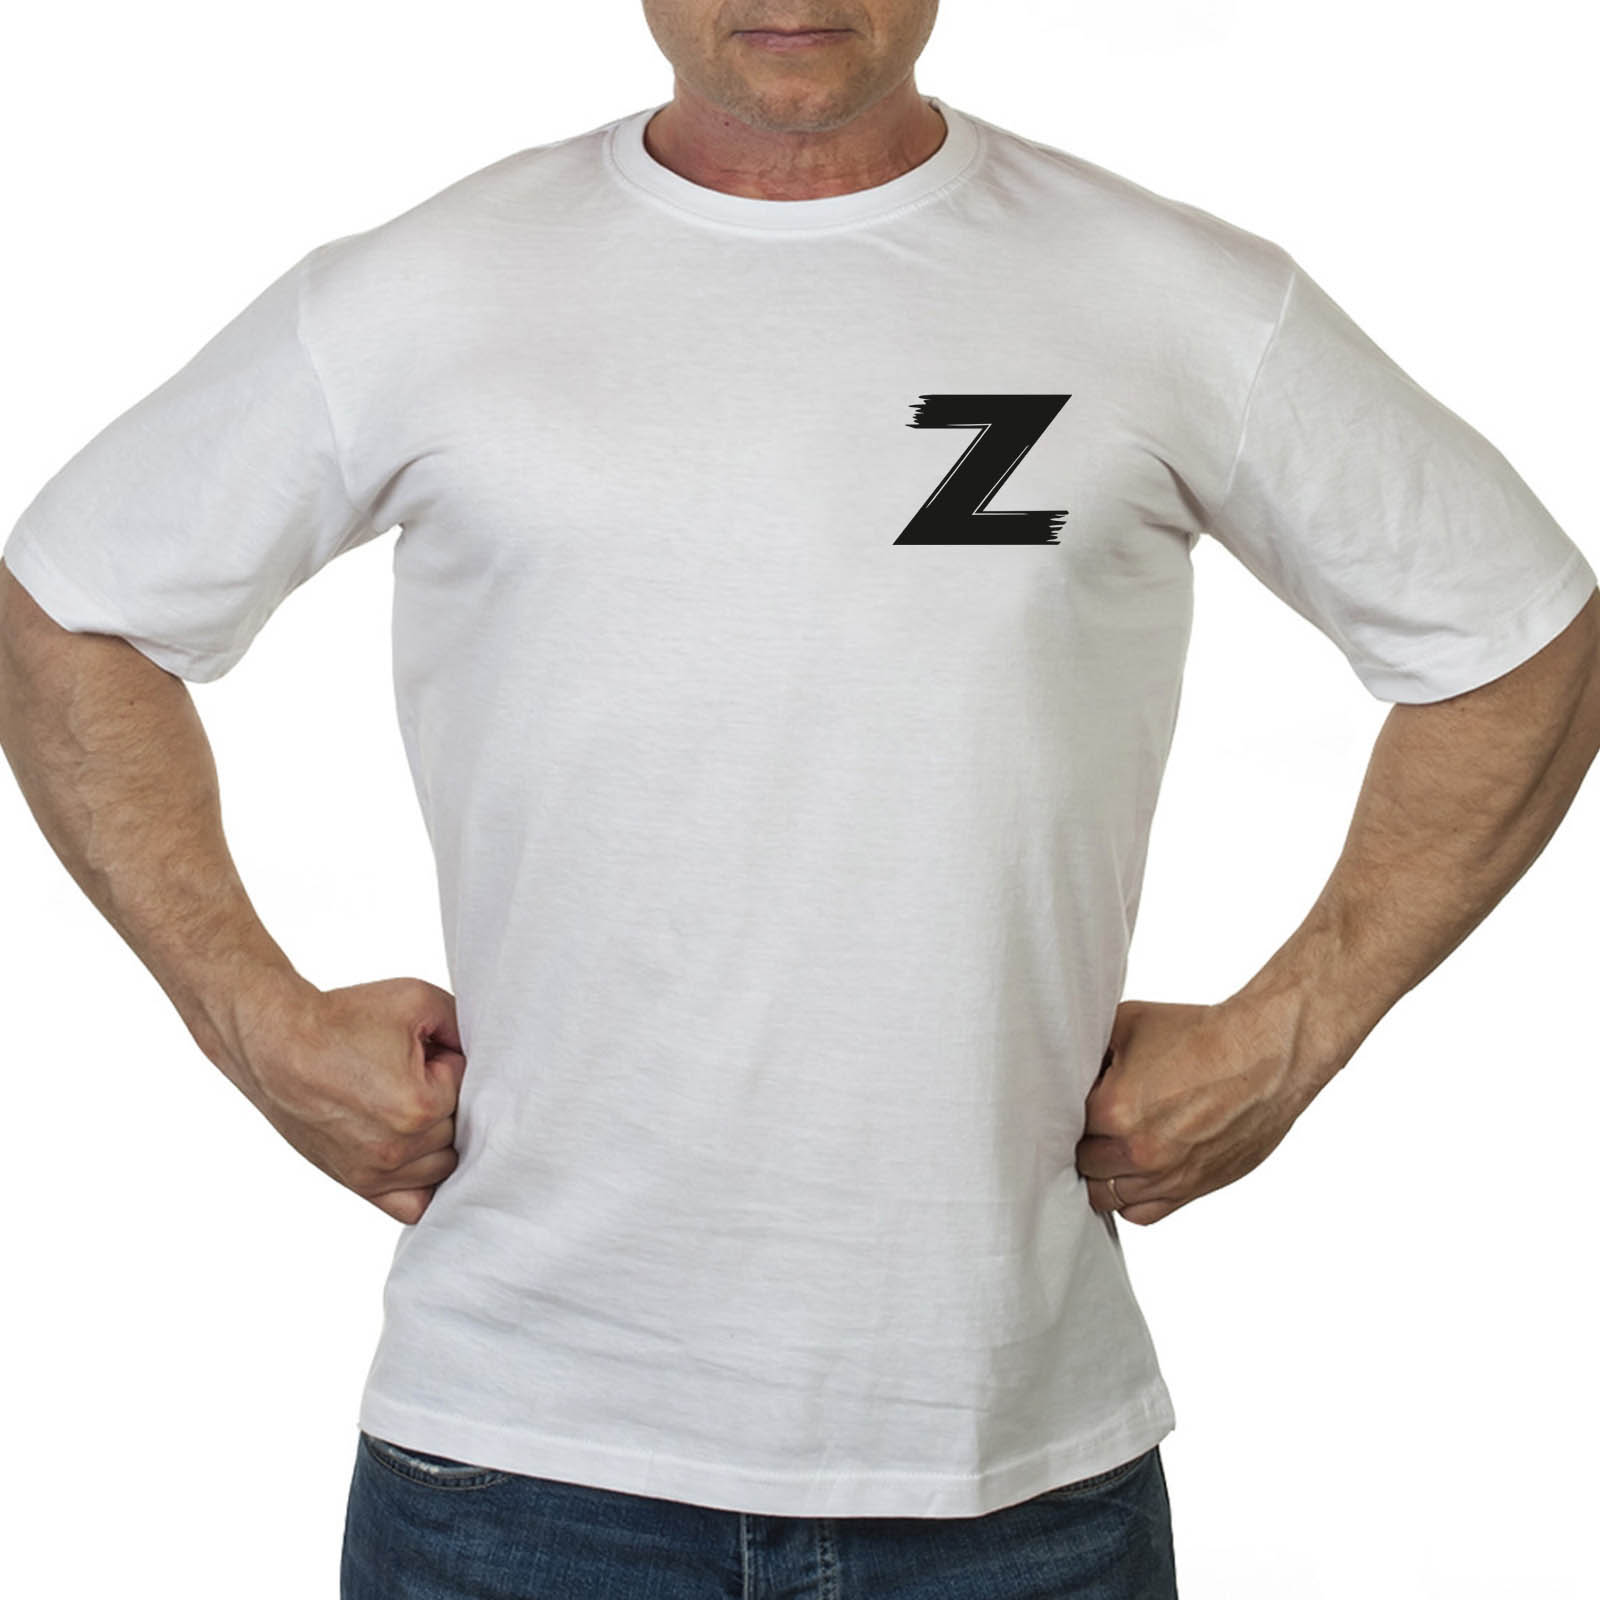 Купить в интернет магазине футболку с литерой Z